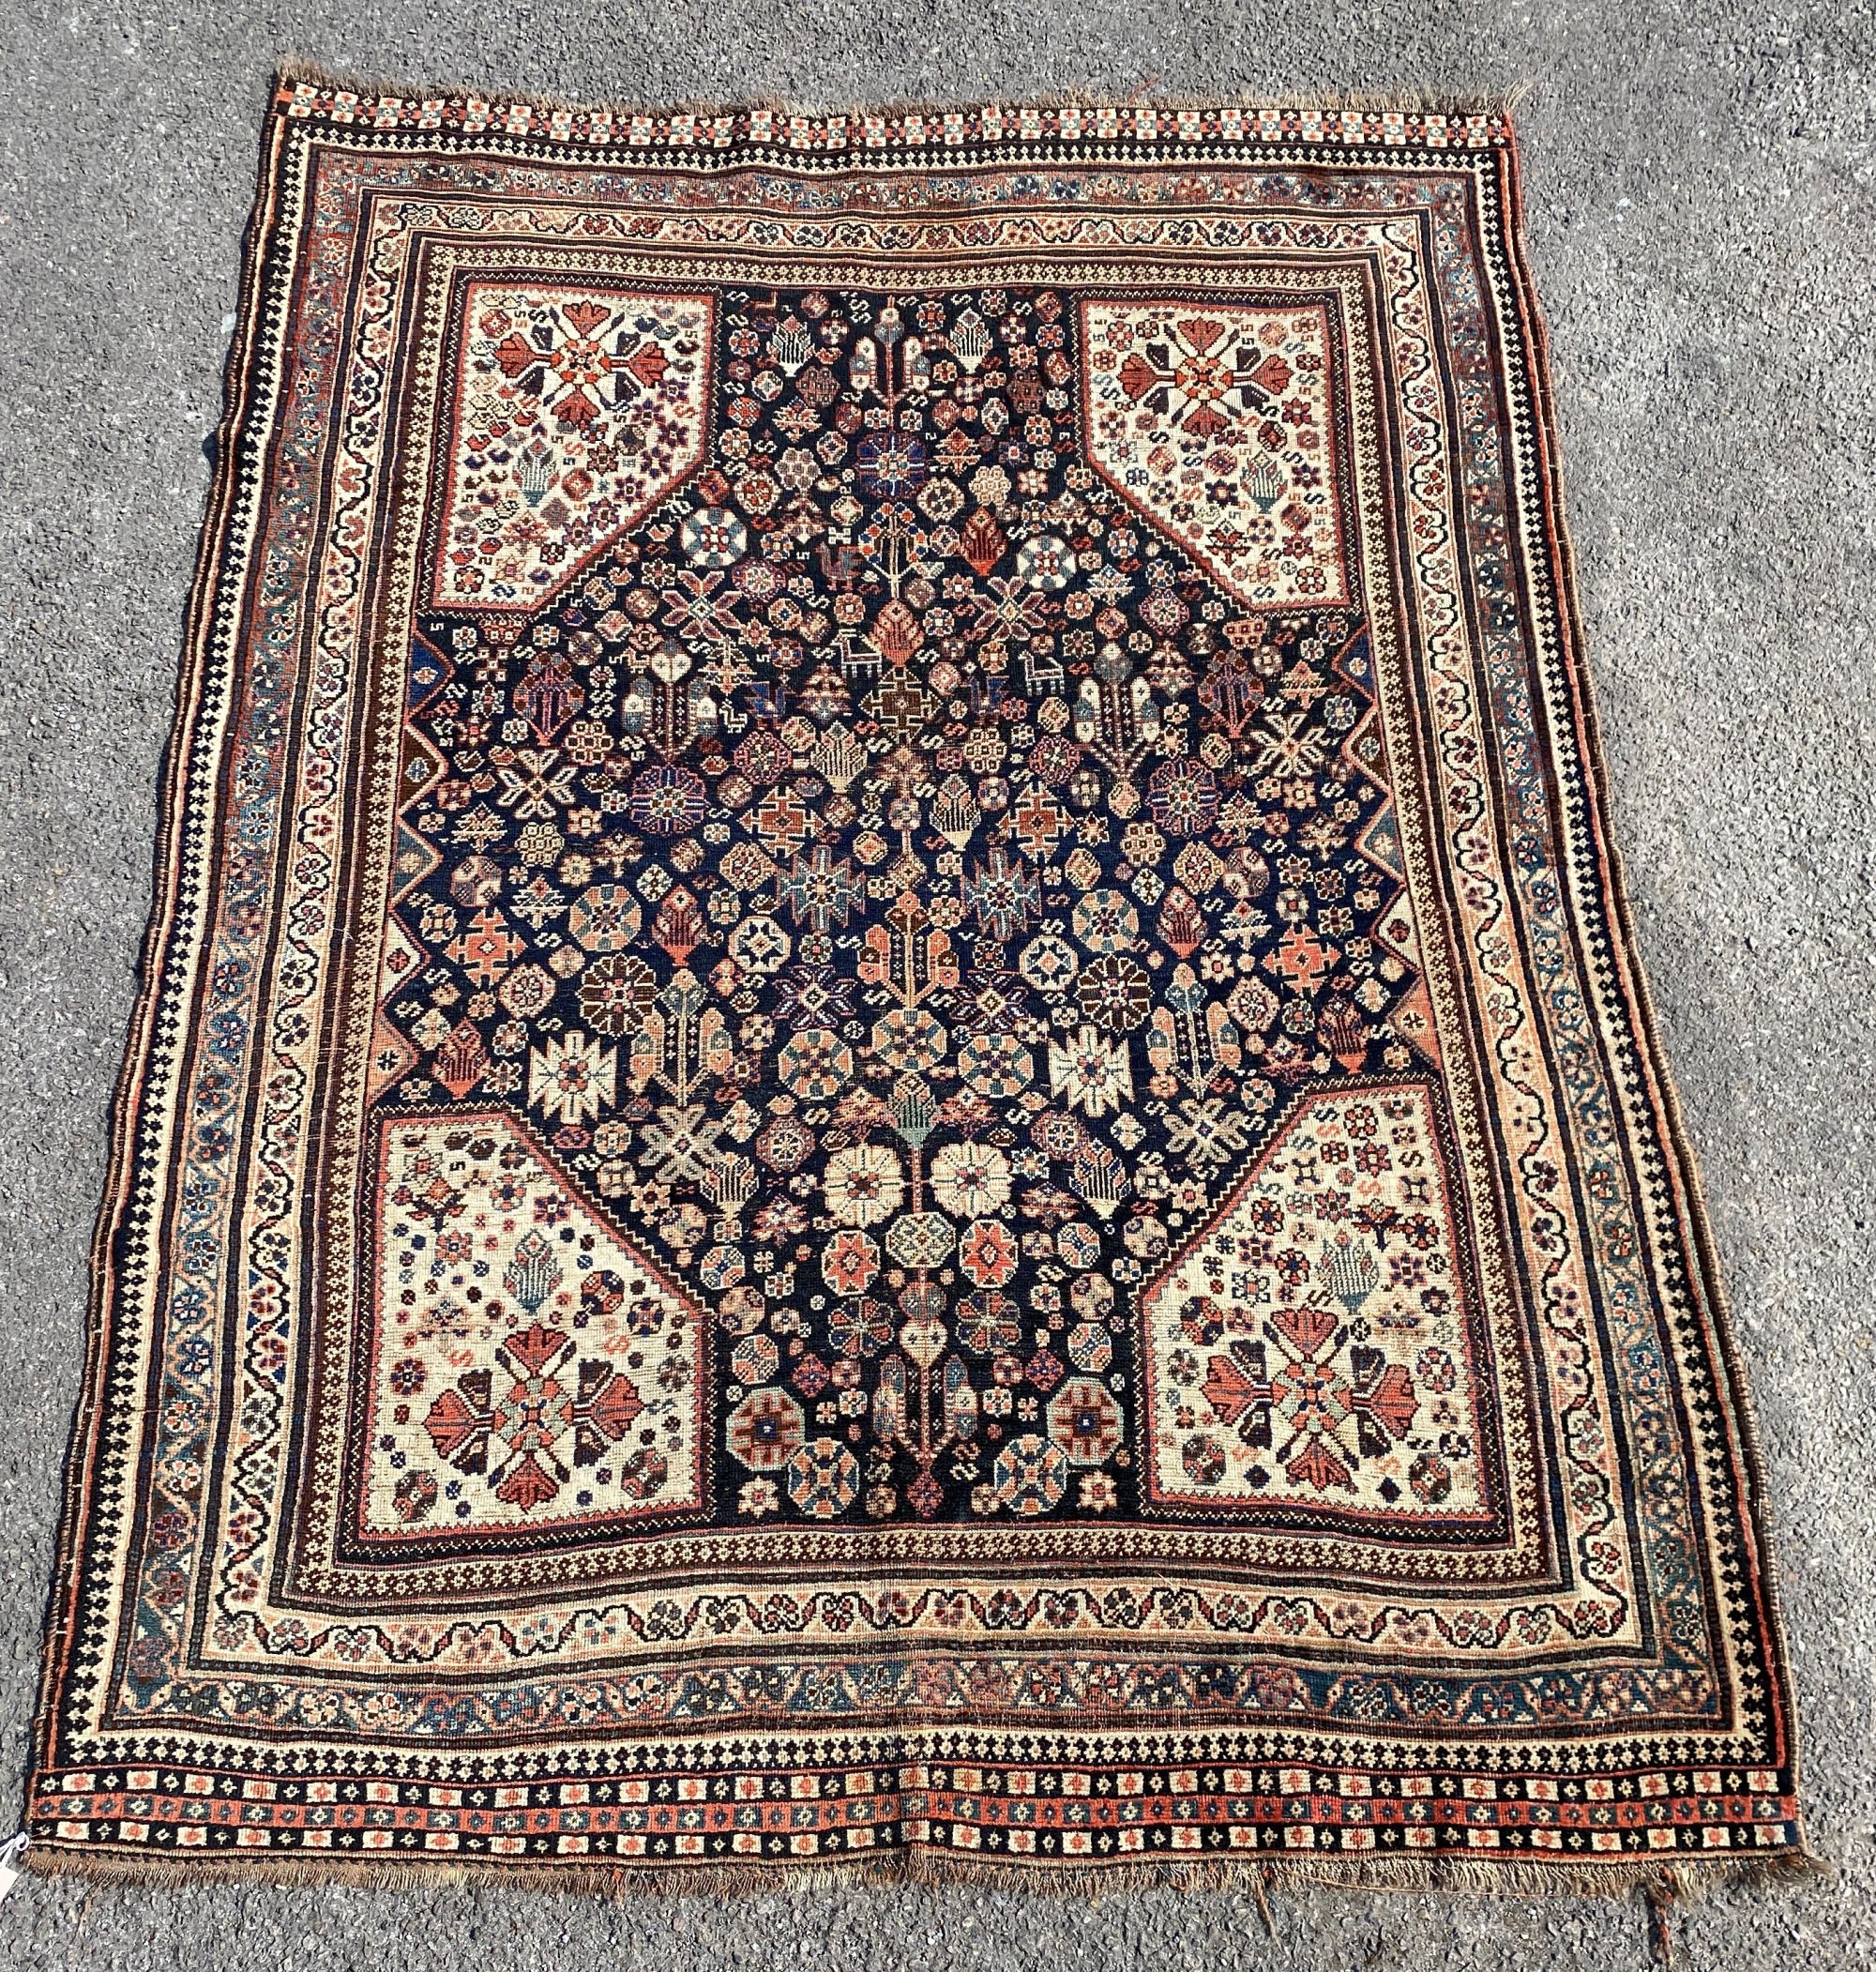 A Shirvan rug, 190 x 150cm